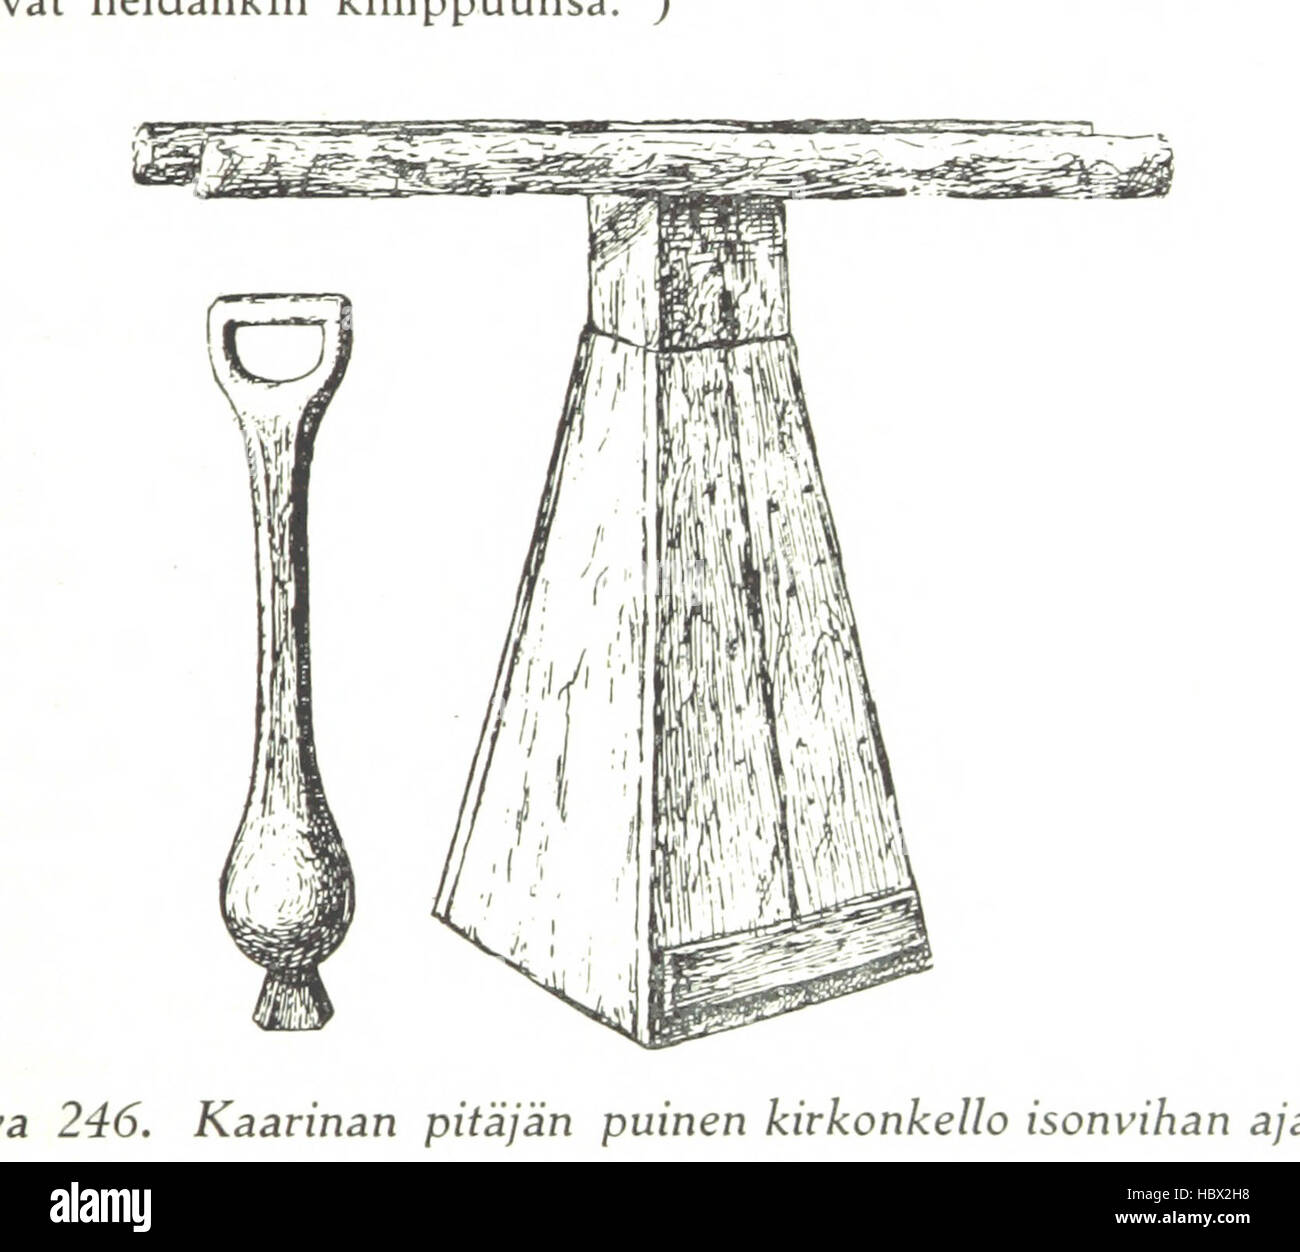 Image taken from page 661 of 'Kuvallinen Suomen historia vanhimmista ajoista nykyaikaan saakka' Image taken from page 661 of 'Kuvallinen Suomen historia vanhimmista Stock Photo